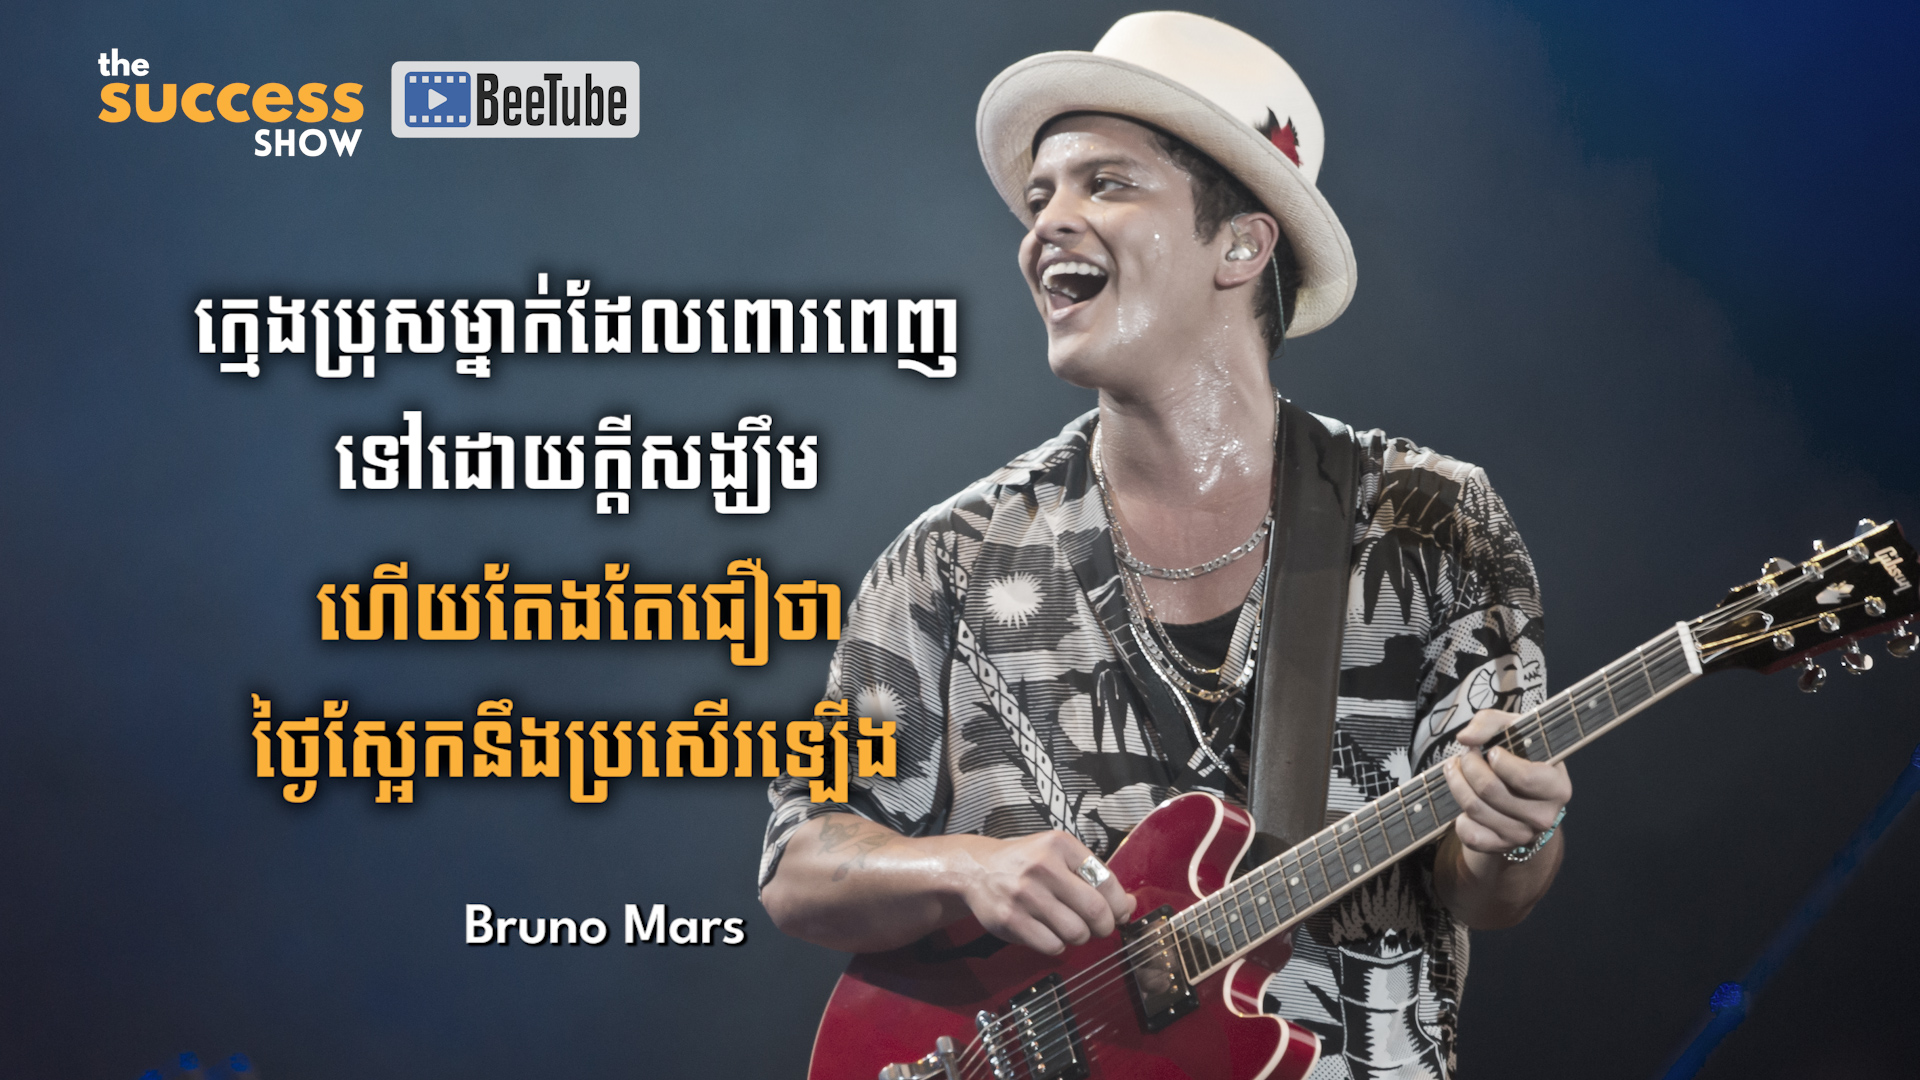 ក្មេងប្រុសម្នាក់ដែលពោរពេញទៅដោយក្តីសង្ឃឹម ហើយតែងតែជឿថាថ្ងៃស្អែកនឹងប្រសើរឡើង - Bruno Mars